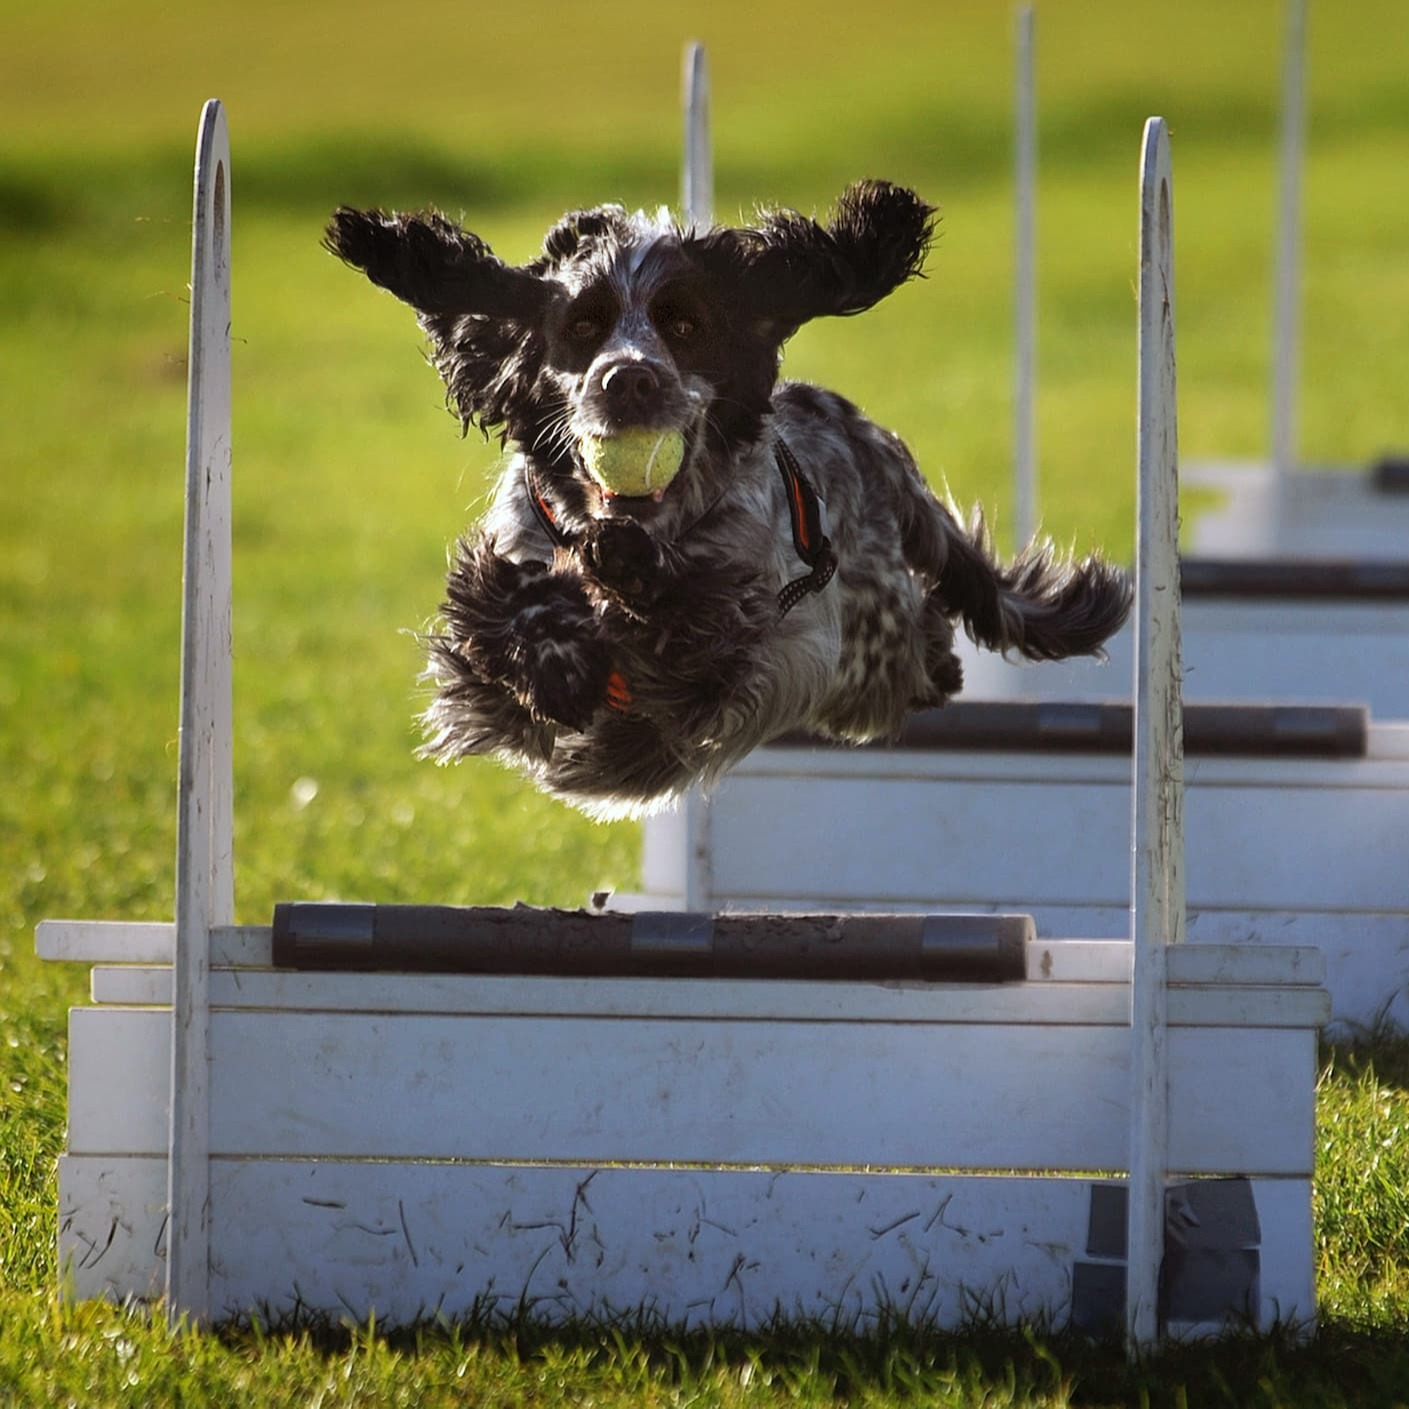 Un chien saute au-dessus d’un obstacle - Aveve